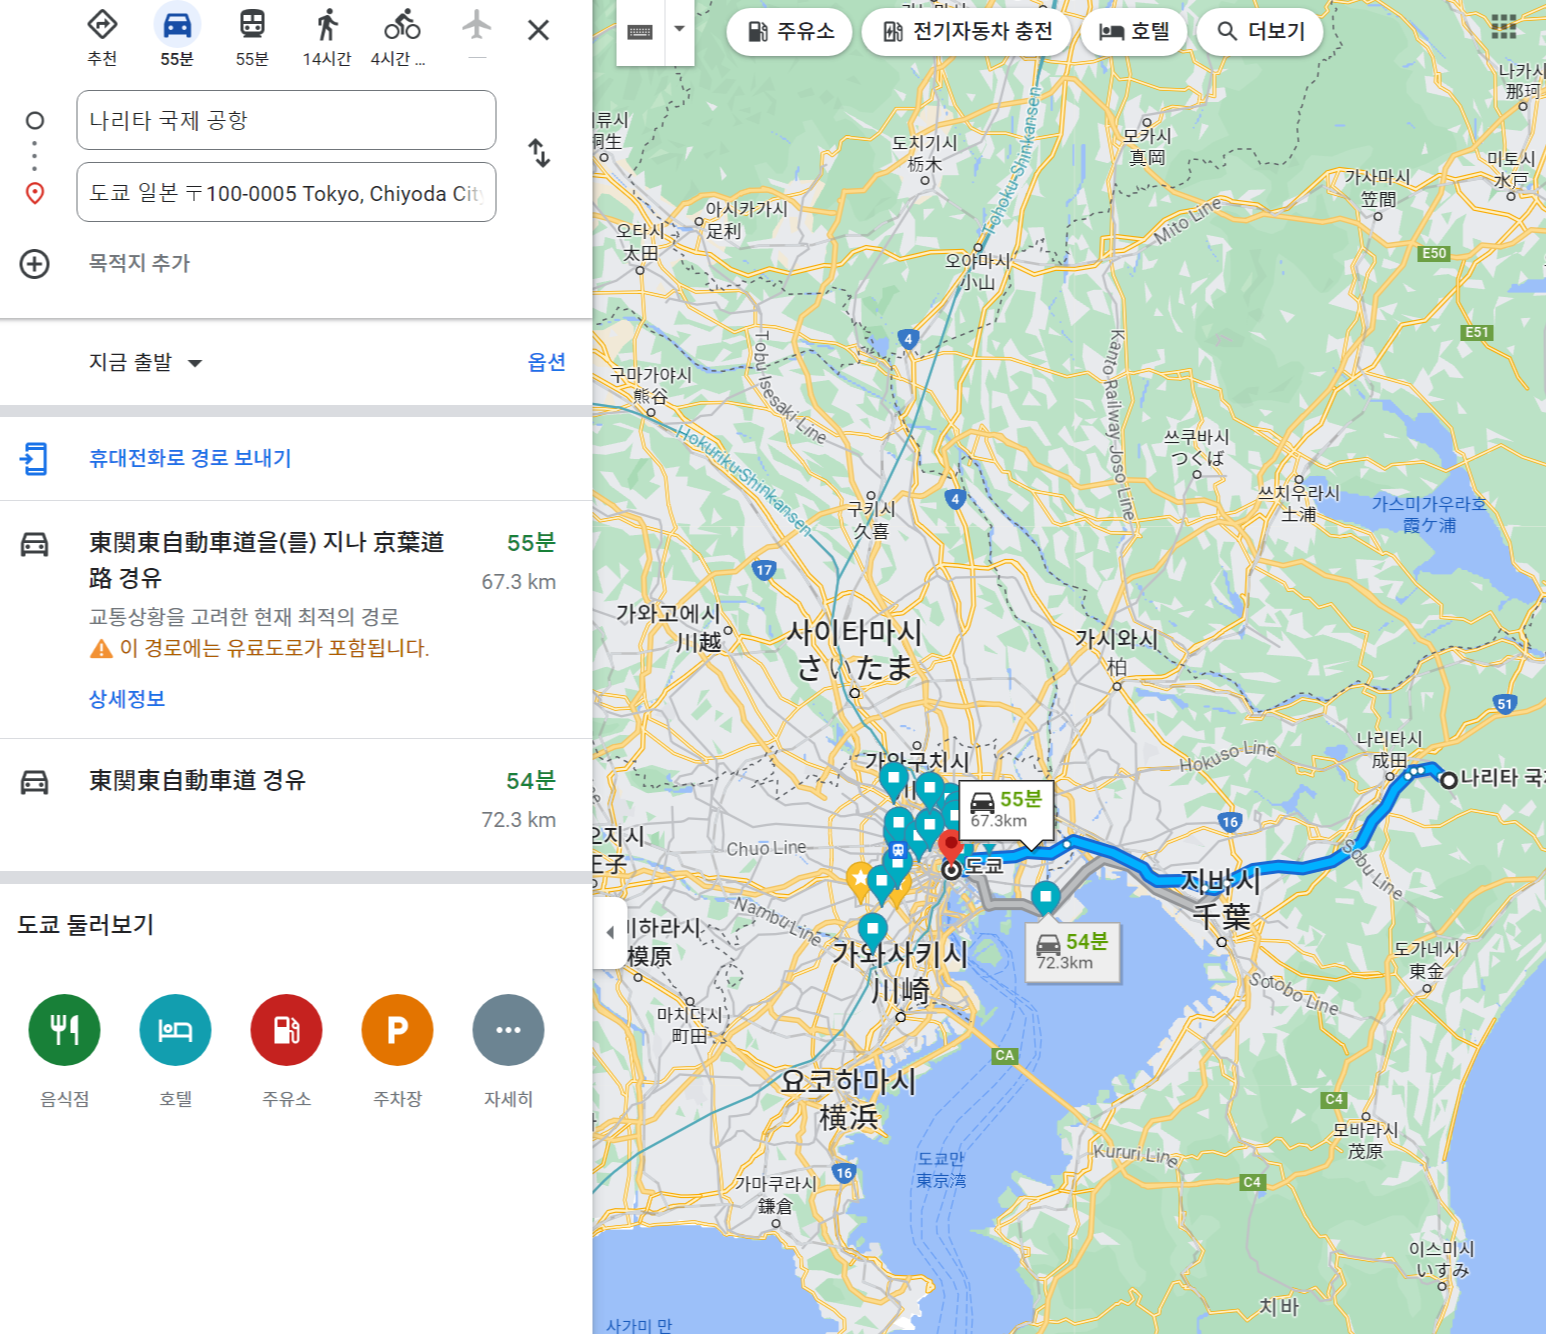 나리타공항에서 도쿄역까지의 거리. 구글지도이며 70키로 정도 거리에 1시간 소요로 나옴